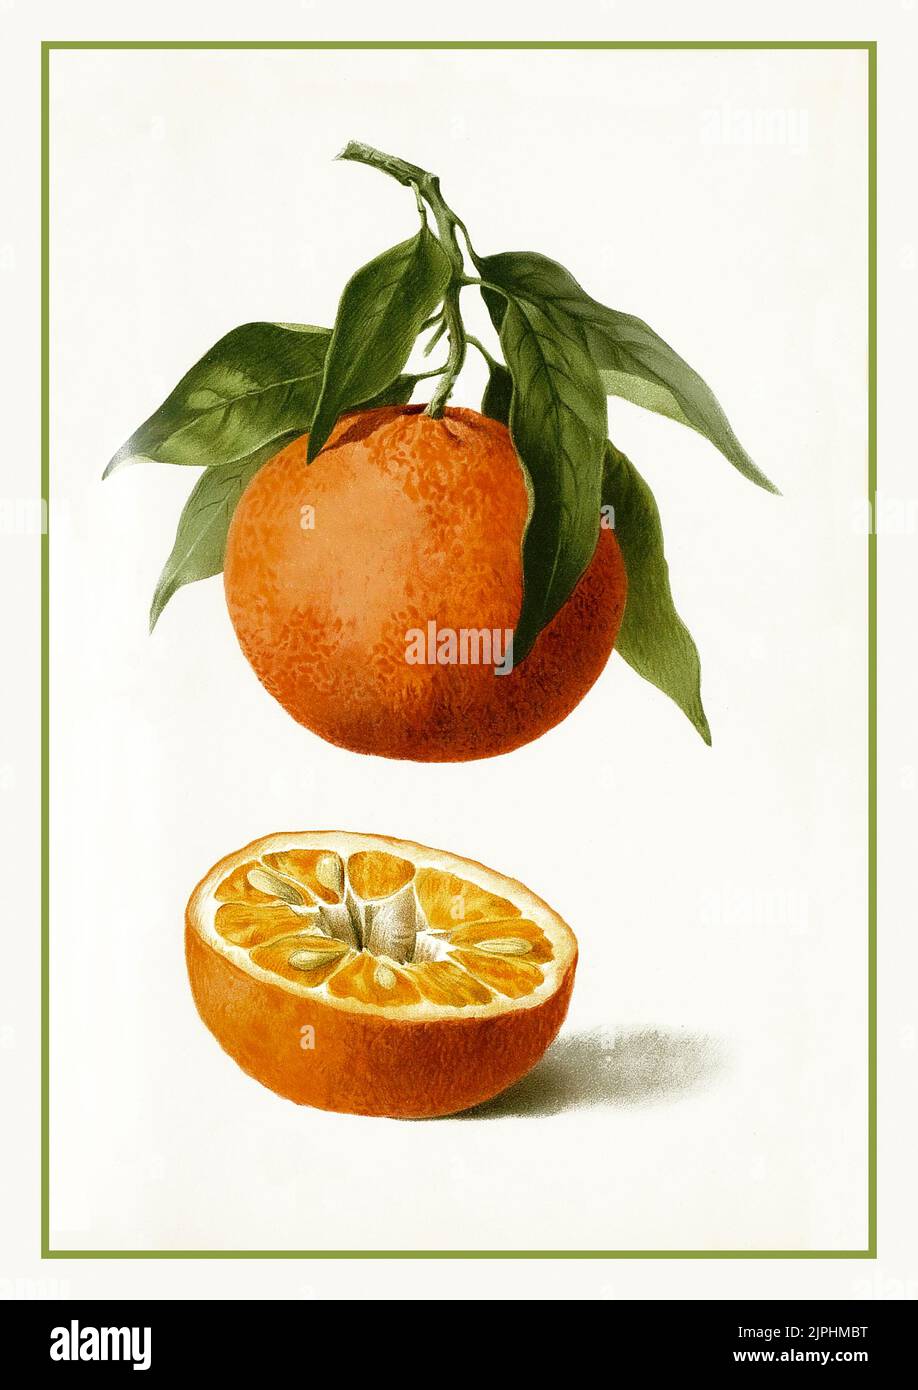 Clementine Lithographie 1900s Citrus reticulata Mandarinenschale die Mandarinenorange (Citrus reticulata), auch bekannt als Mandarine oder Mandarine, ist eine kleine Zitrusfrucht. Behandelt als eine bestimmte Art von Orange, wird es in der Regel schlicht oder in Fruchtsalaten gegessen Tangerinen sind eine Gruppe von orangefarbenen Zitrusfrüchten, die aus Hybriden von Mandarinorange mit etwas Pomelo Beitrag besteht. Stockfoto